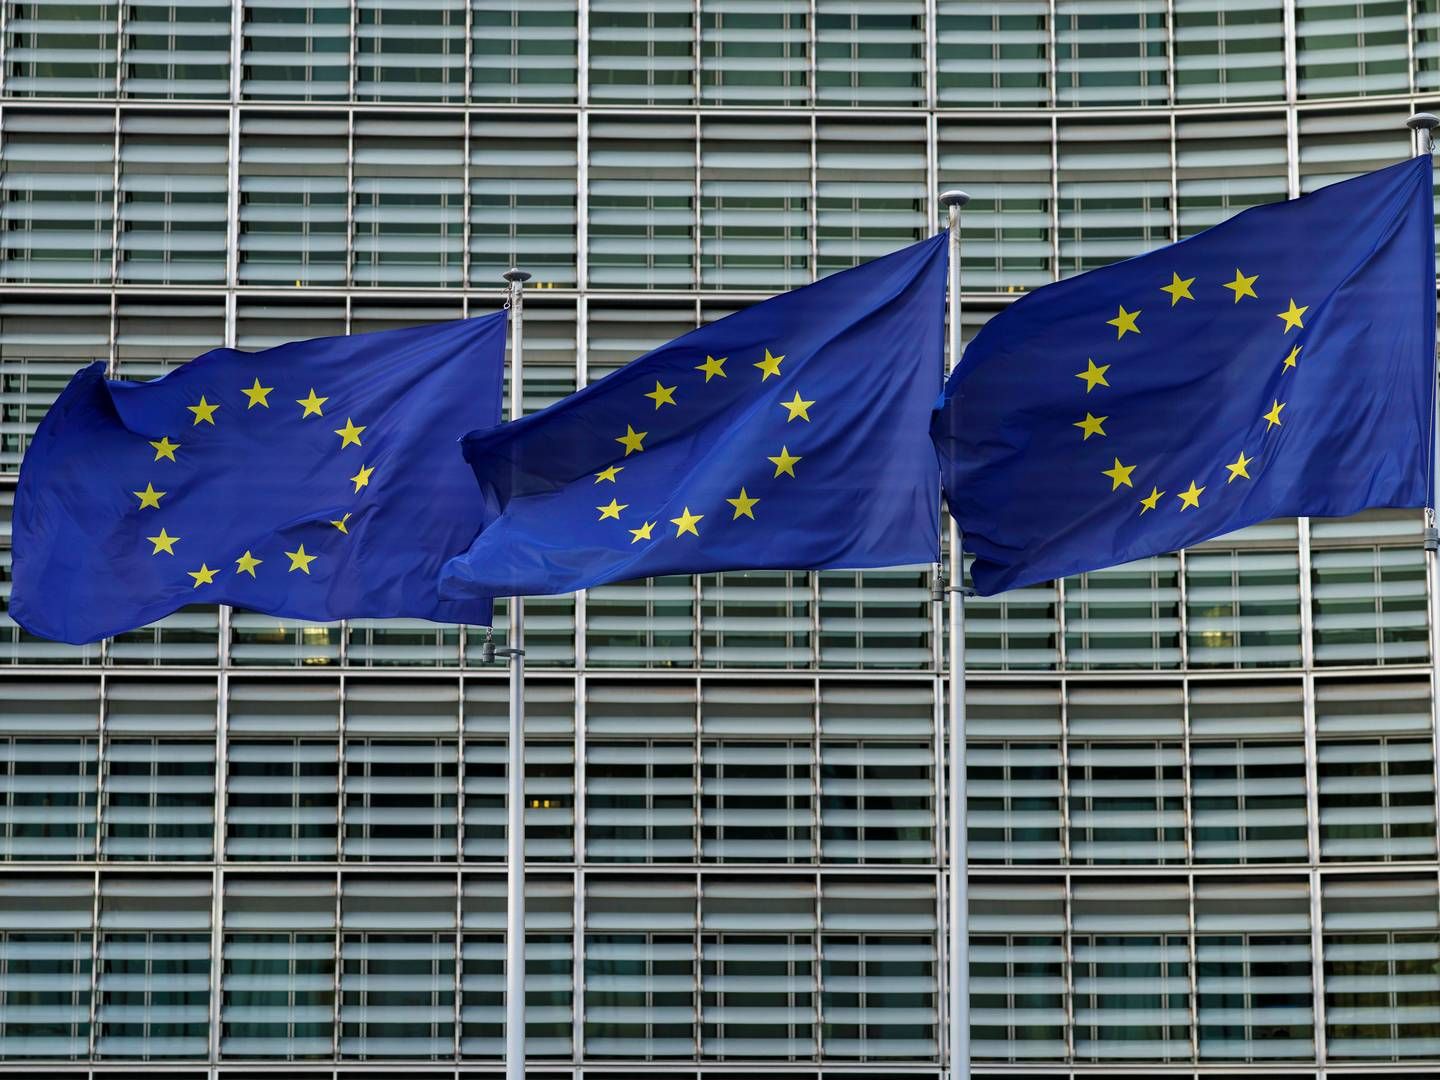 EU-flagget vaier i vinden utenfor berlaymontbygningen i Brussel i Belgia, Europakommisjonens hovedkvarter. | Foto: Cornelius Poppe / NTB